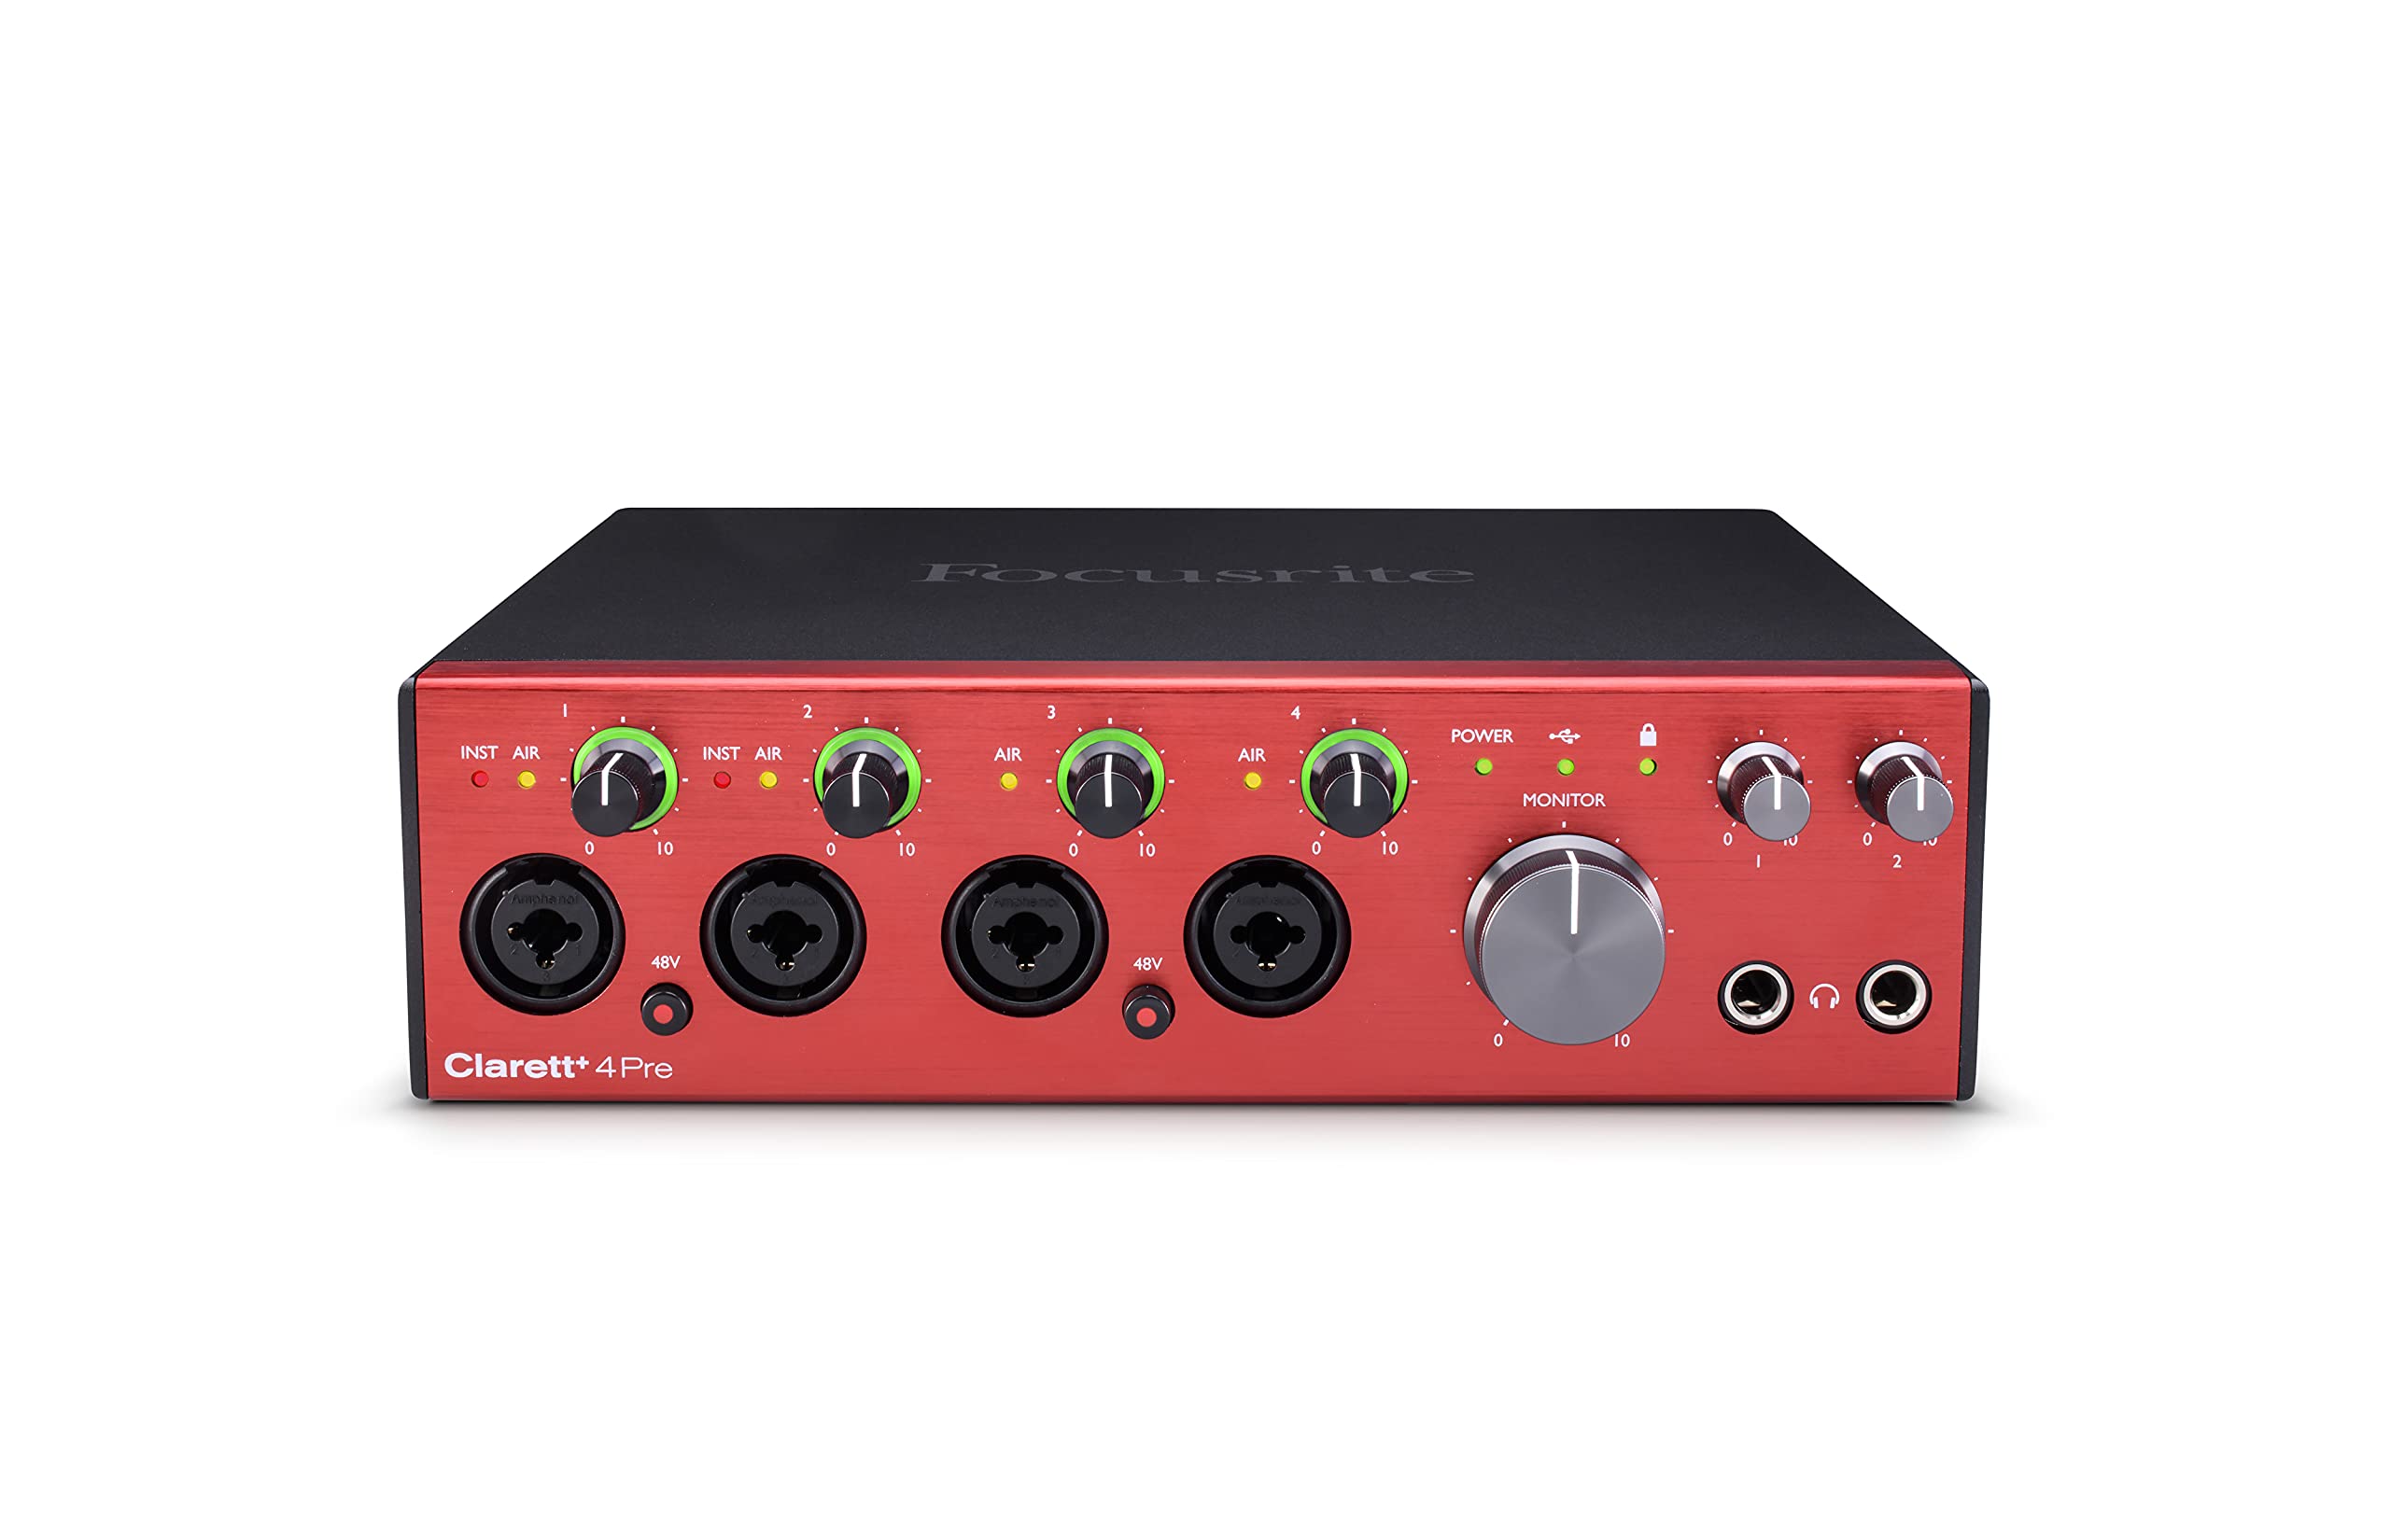 Focusrite Clarett+ 4Pre USB-Audio-Interface in Studioqualität für Musiker*innen – Hochwertige Aufnahmen über vier rausch- und verzerrungsarme Mikrofonvorverstärker für authentische Klangergebnisse